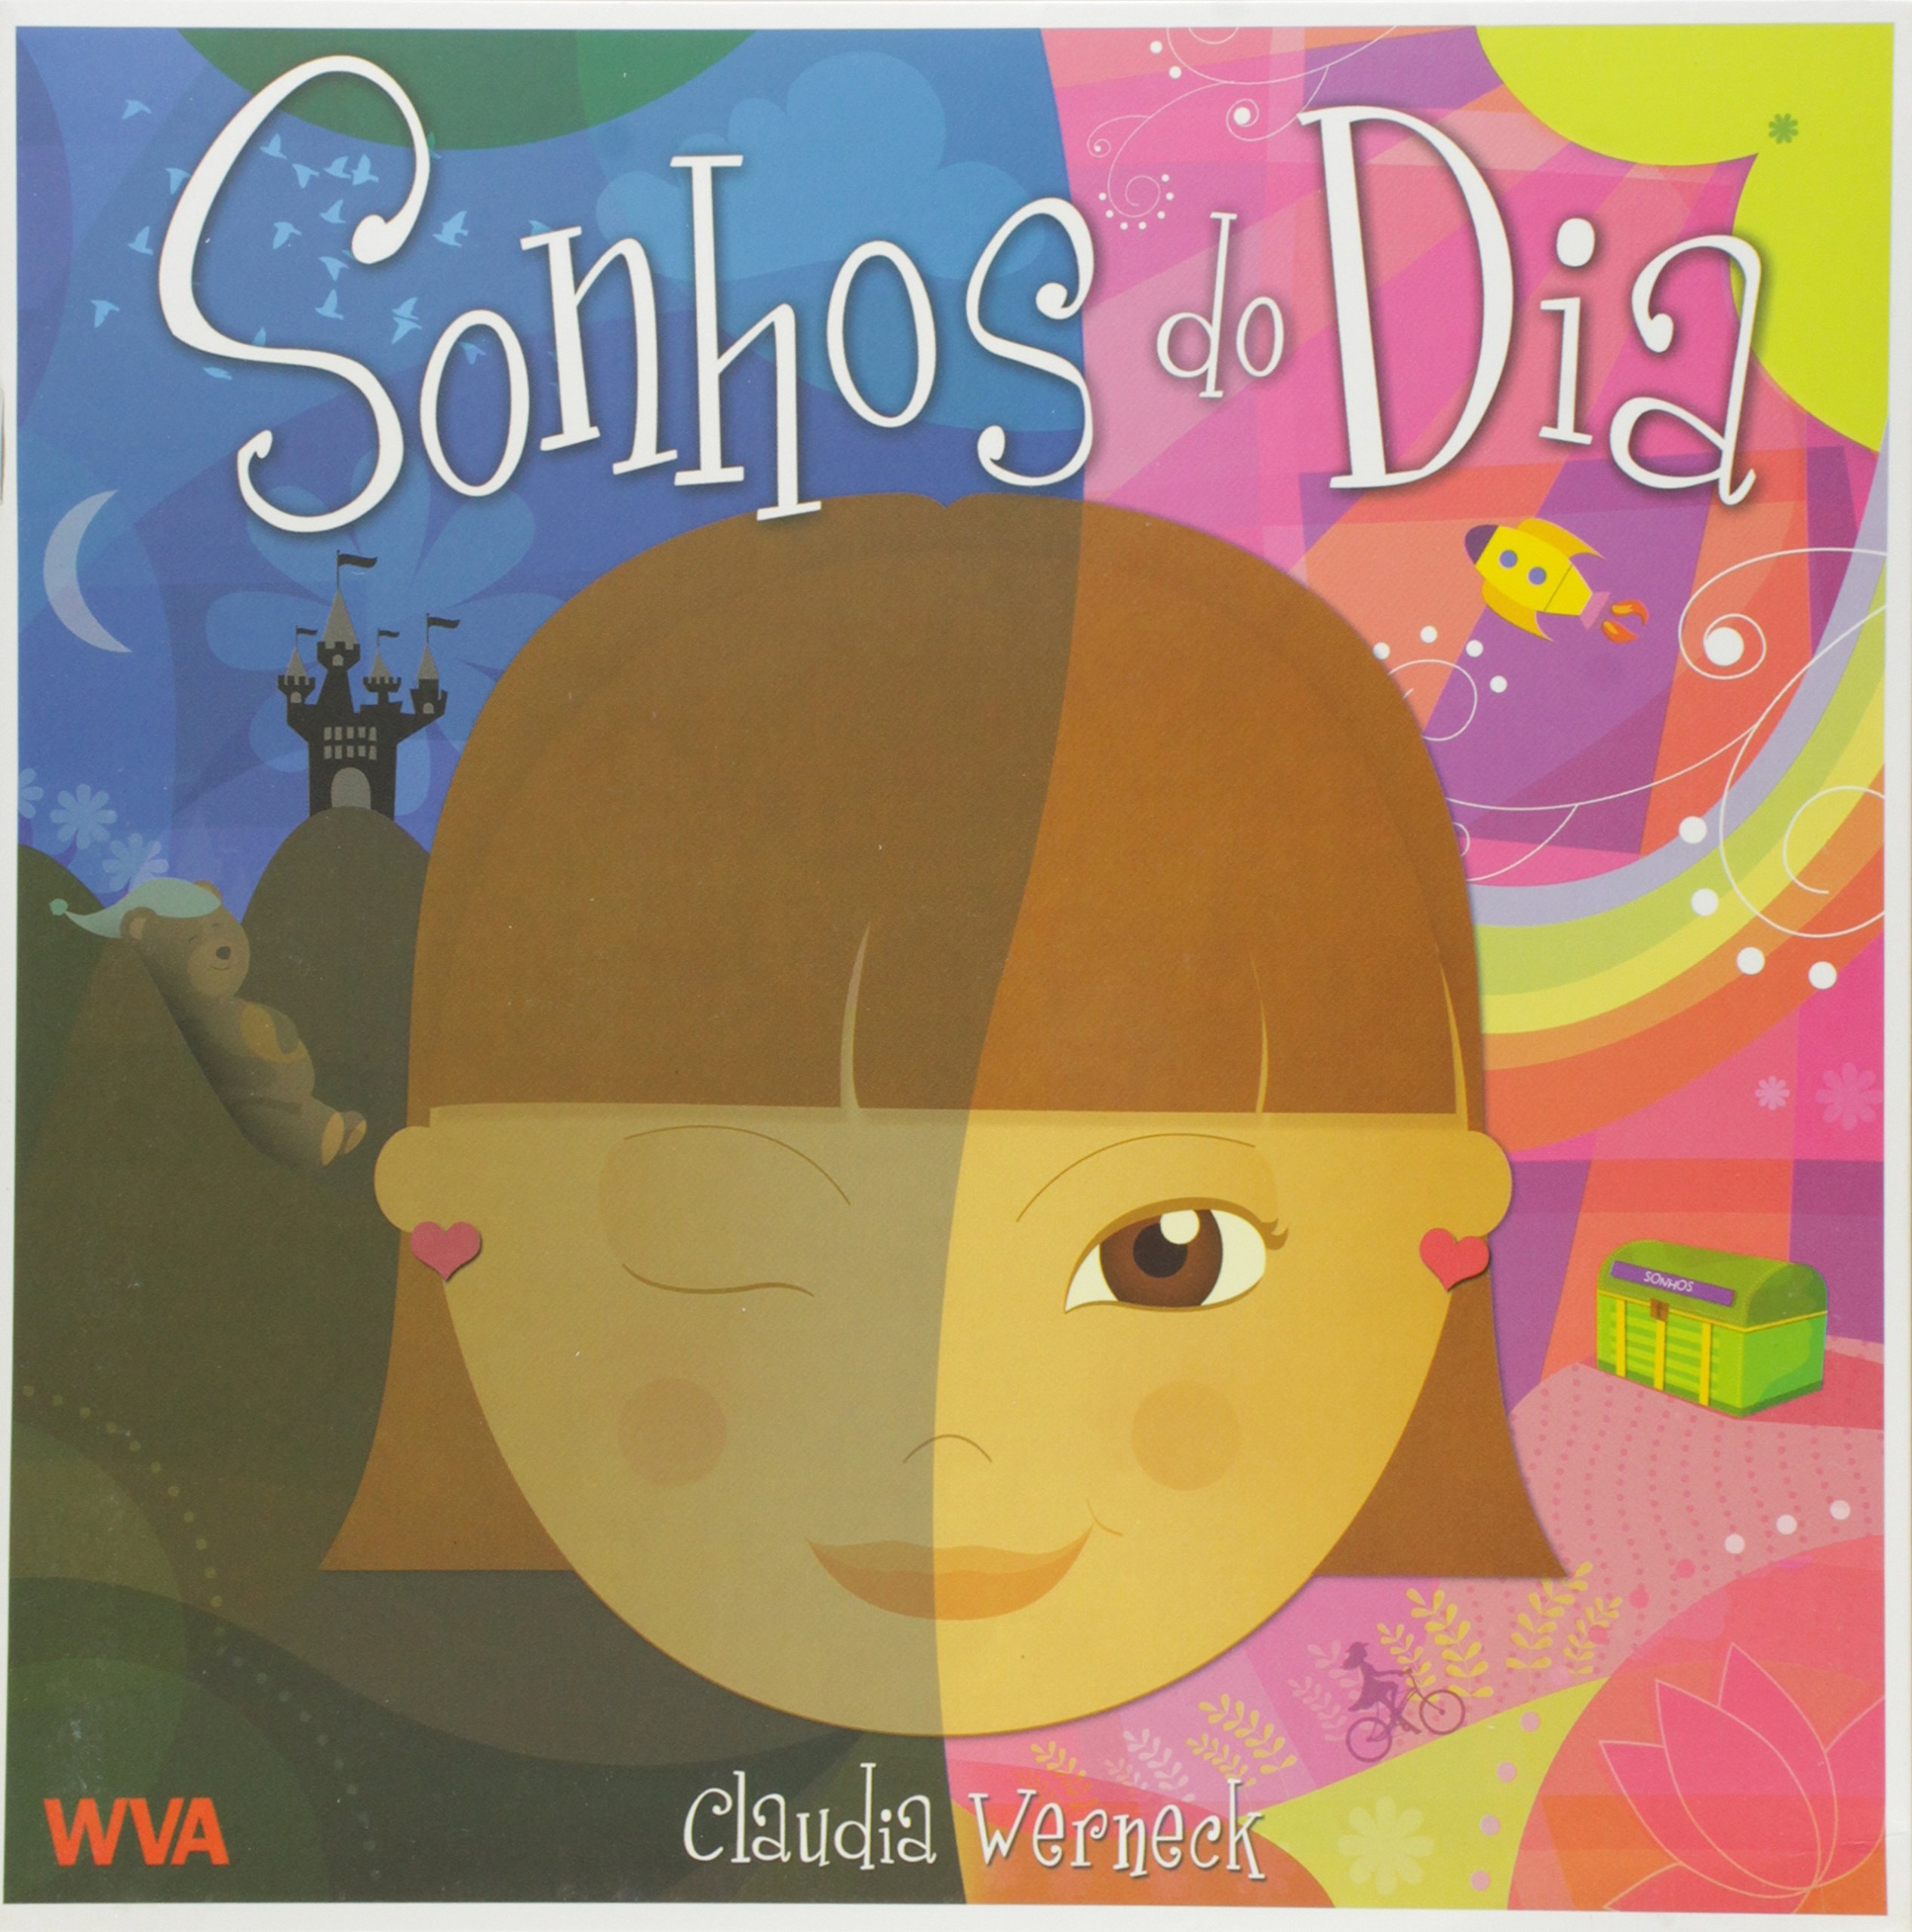 Capa do livro "Sonhos do dia", de Claudia Werneck. A imagem mostra uma menina de pele bronzeada e cabelos lisos, em um fundo dividido nas cores azul e rosa.